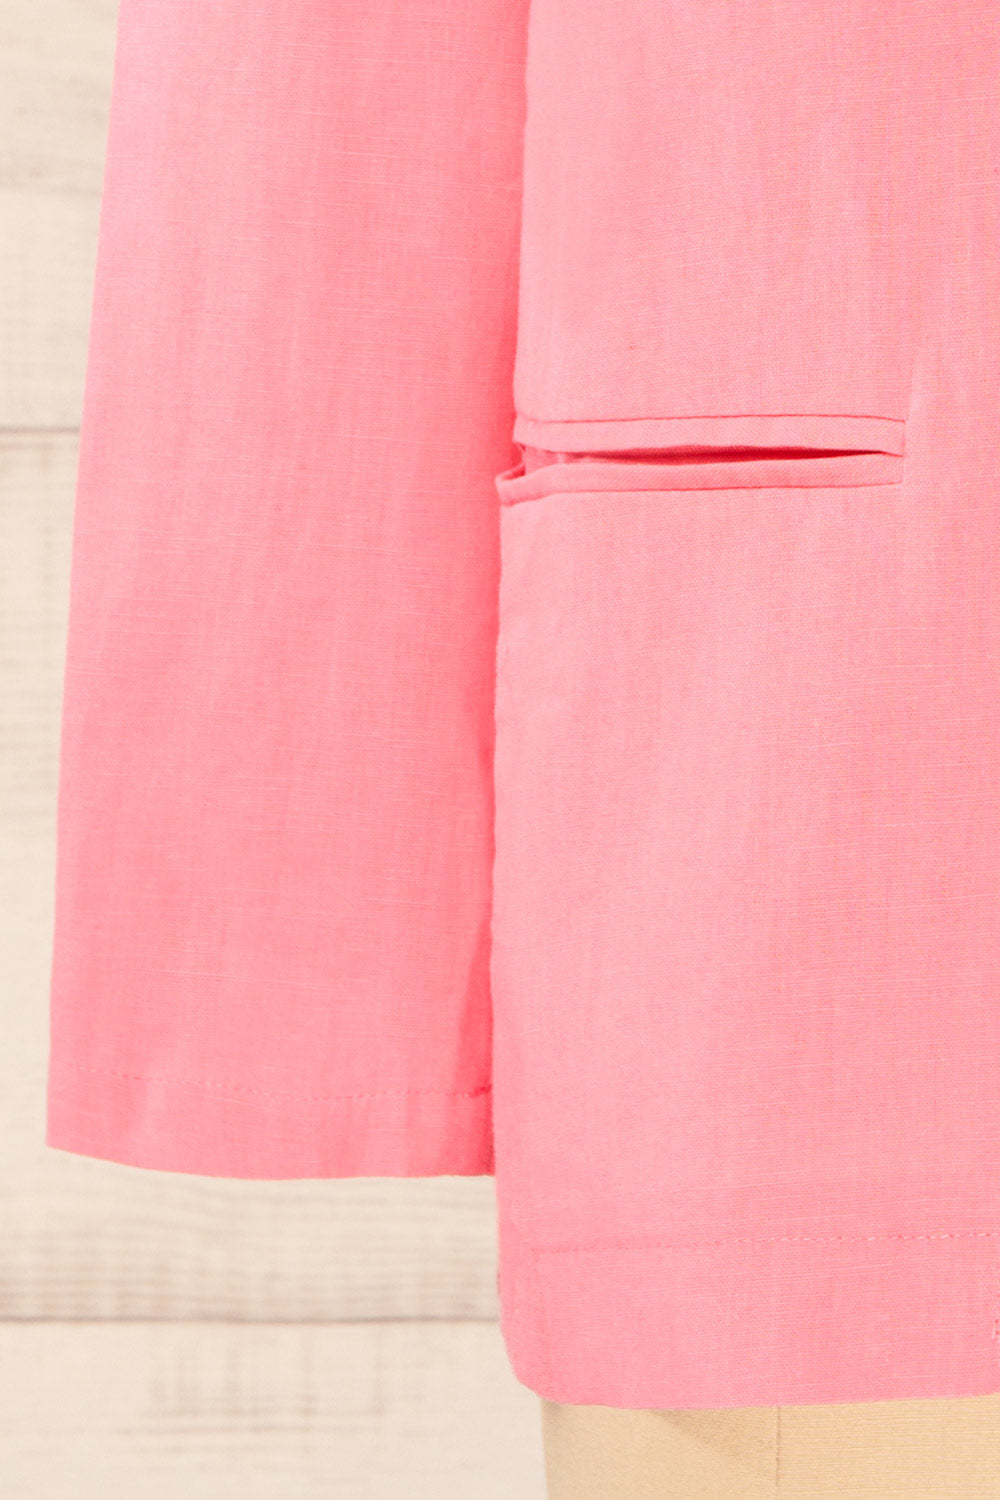 Sucunduri Pink Light Linen Blazer | La petite garçonne bottom